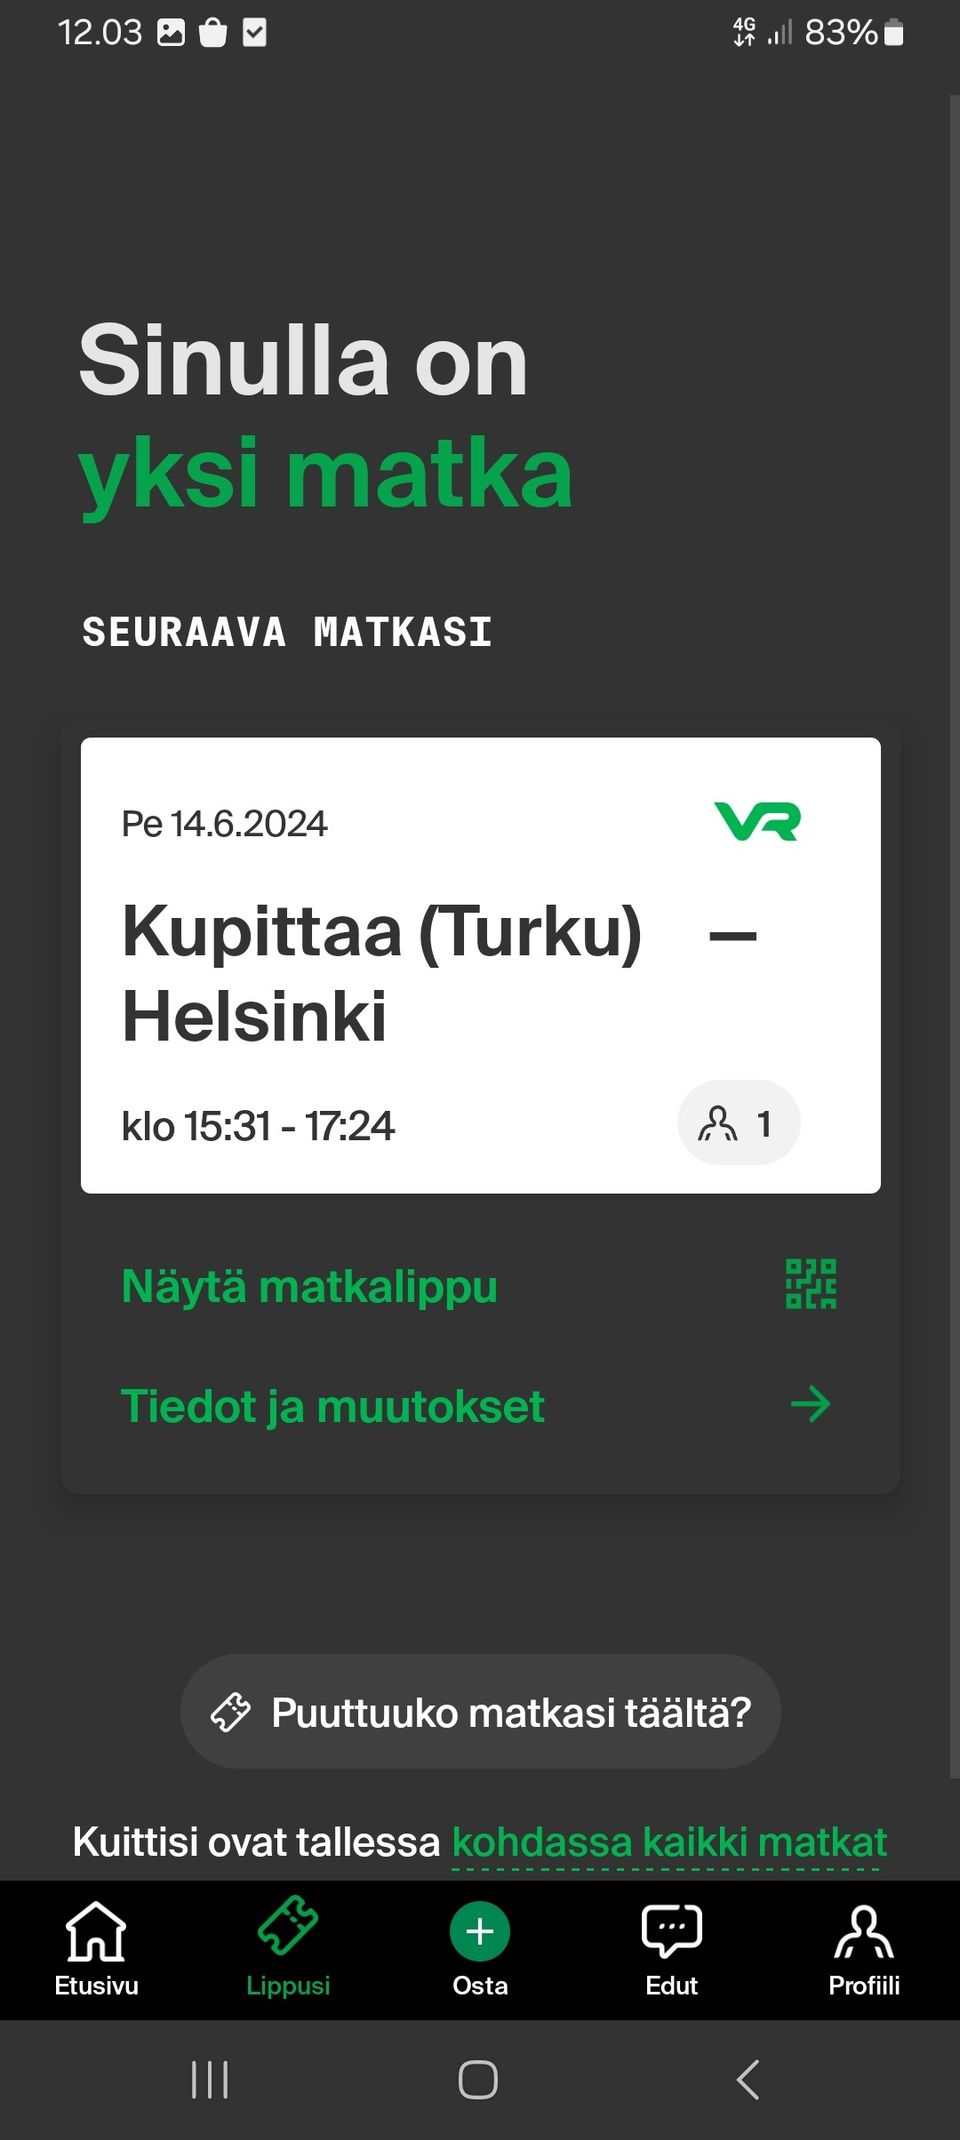 Junalippu Turku- Helsinki 14.6. Säästä 10.90e.